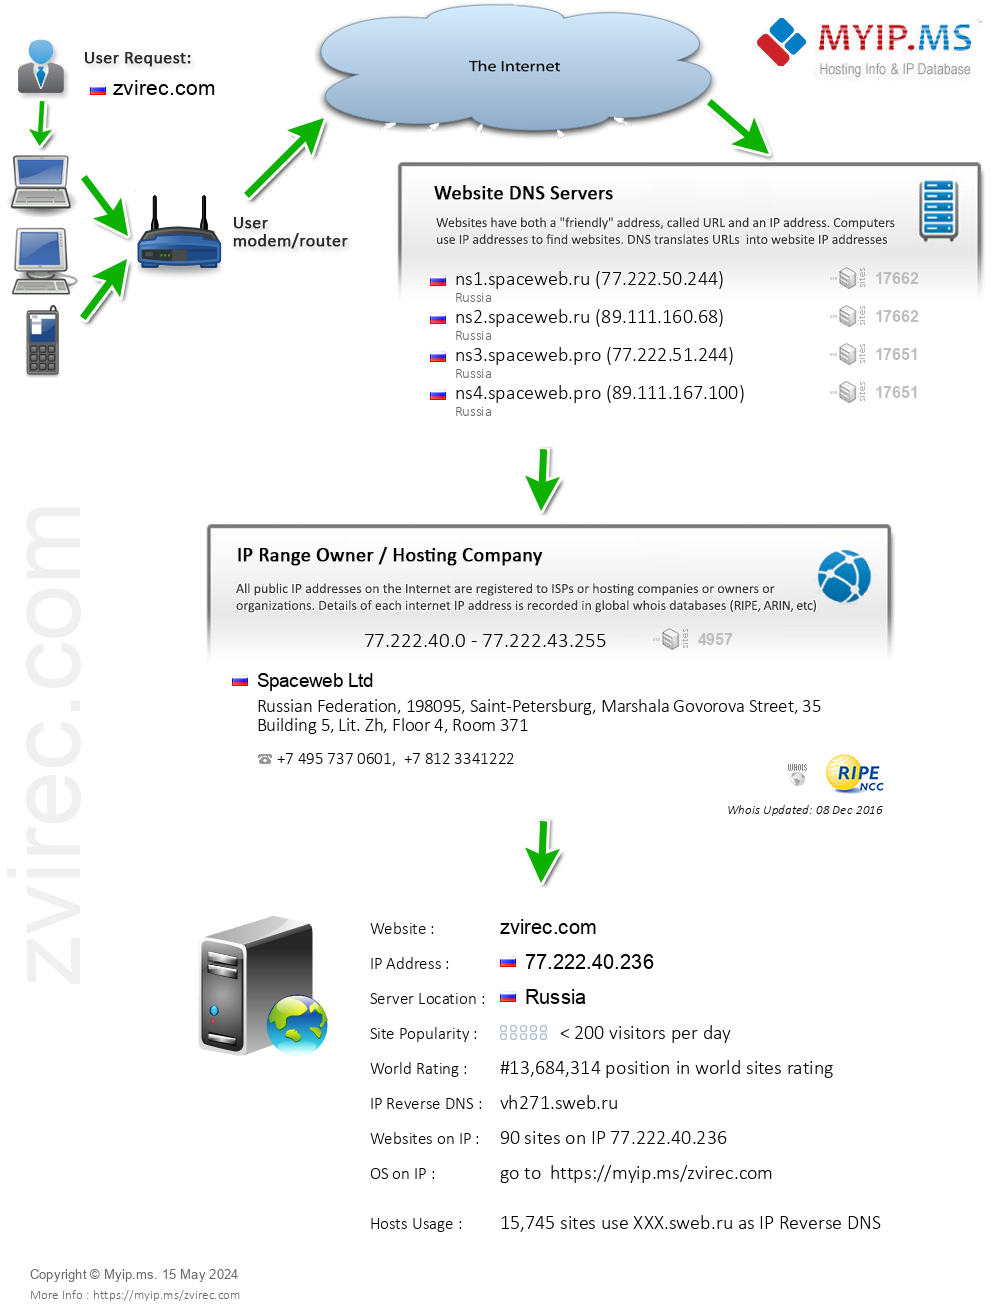 Zvirec.com - Website Hosting Visual IP Diagram